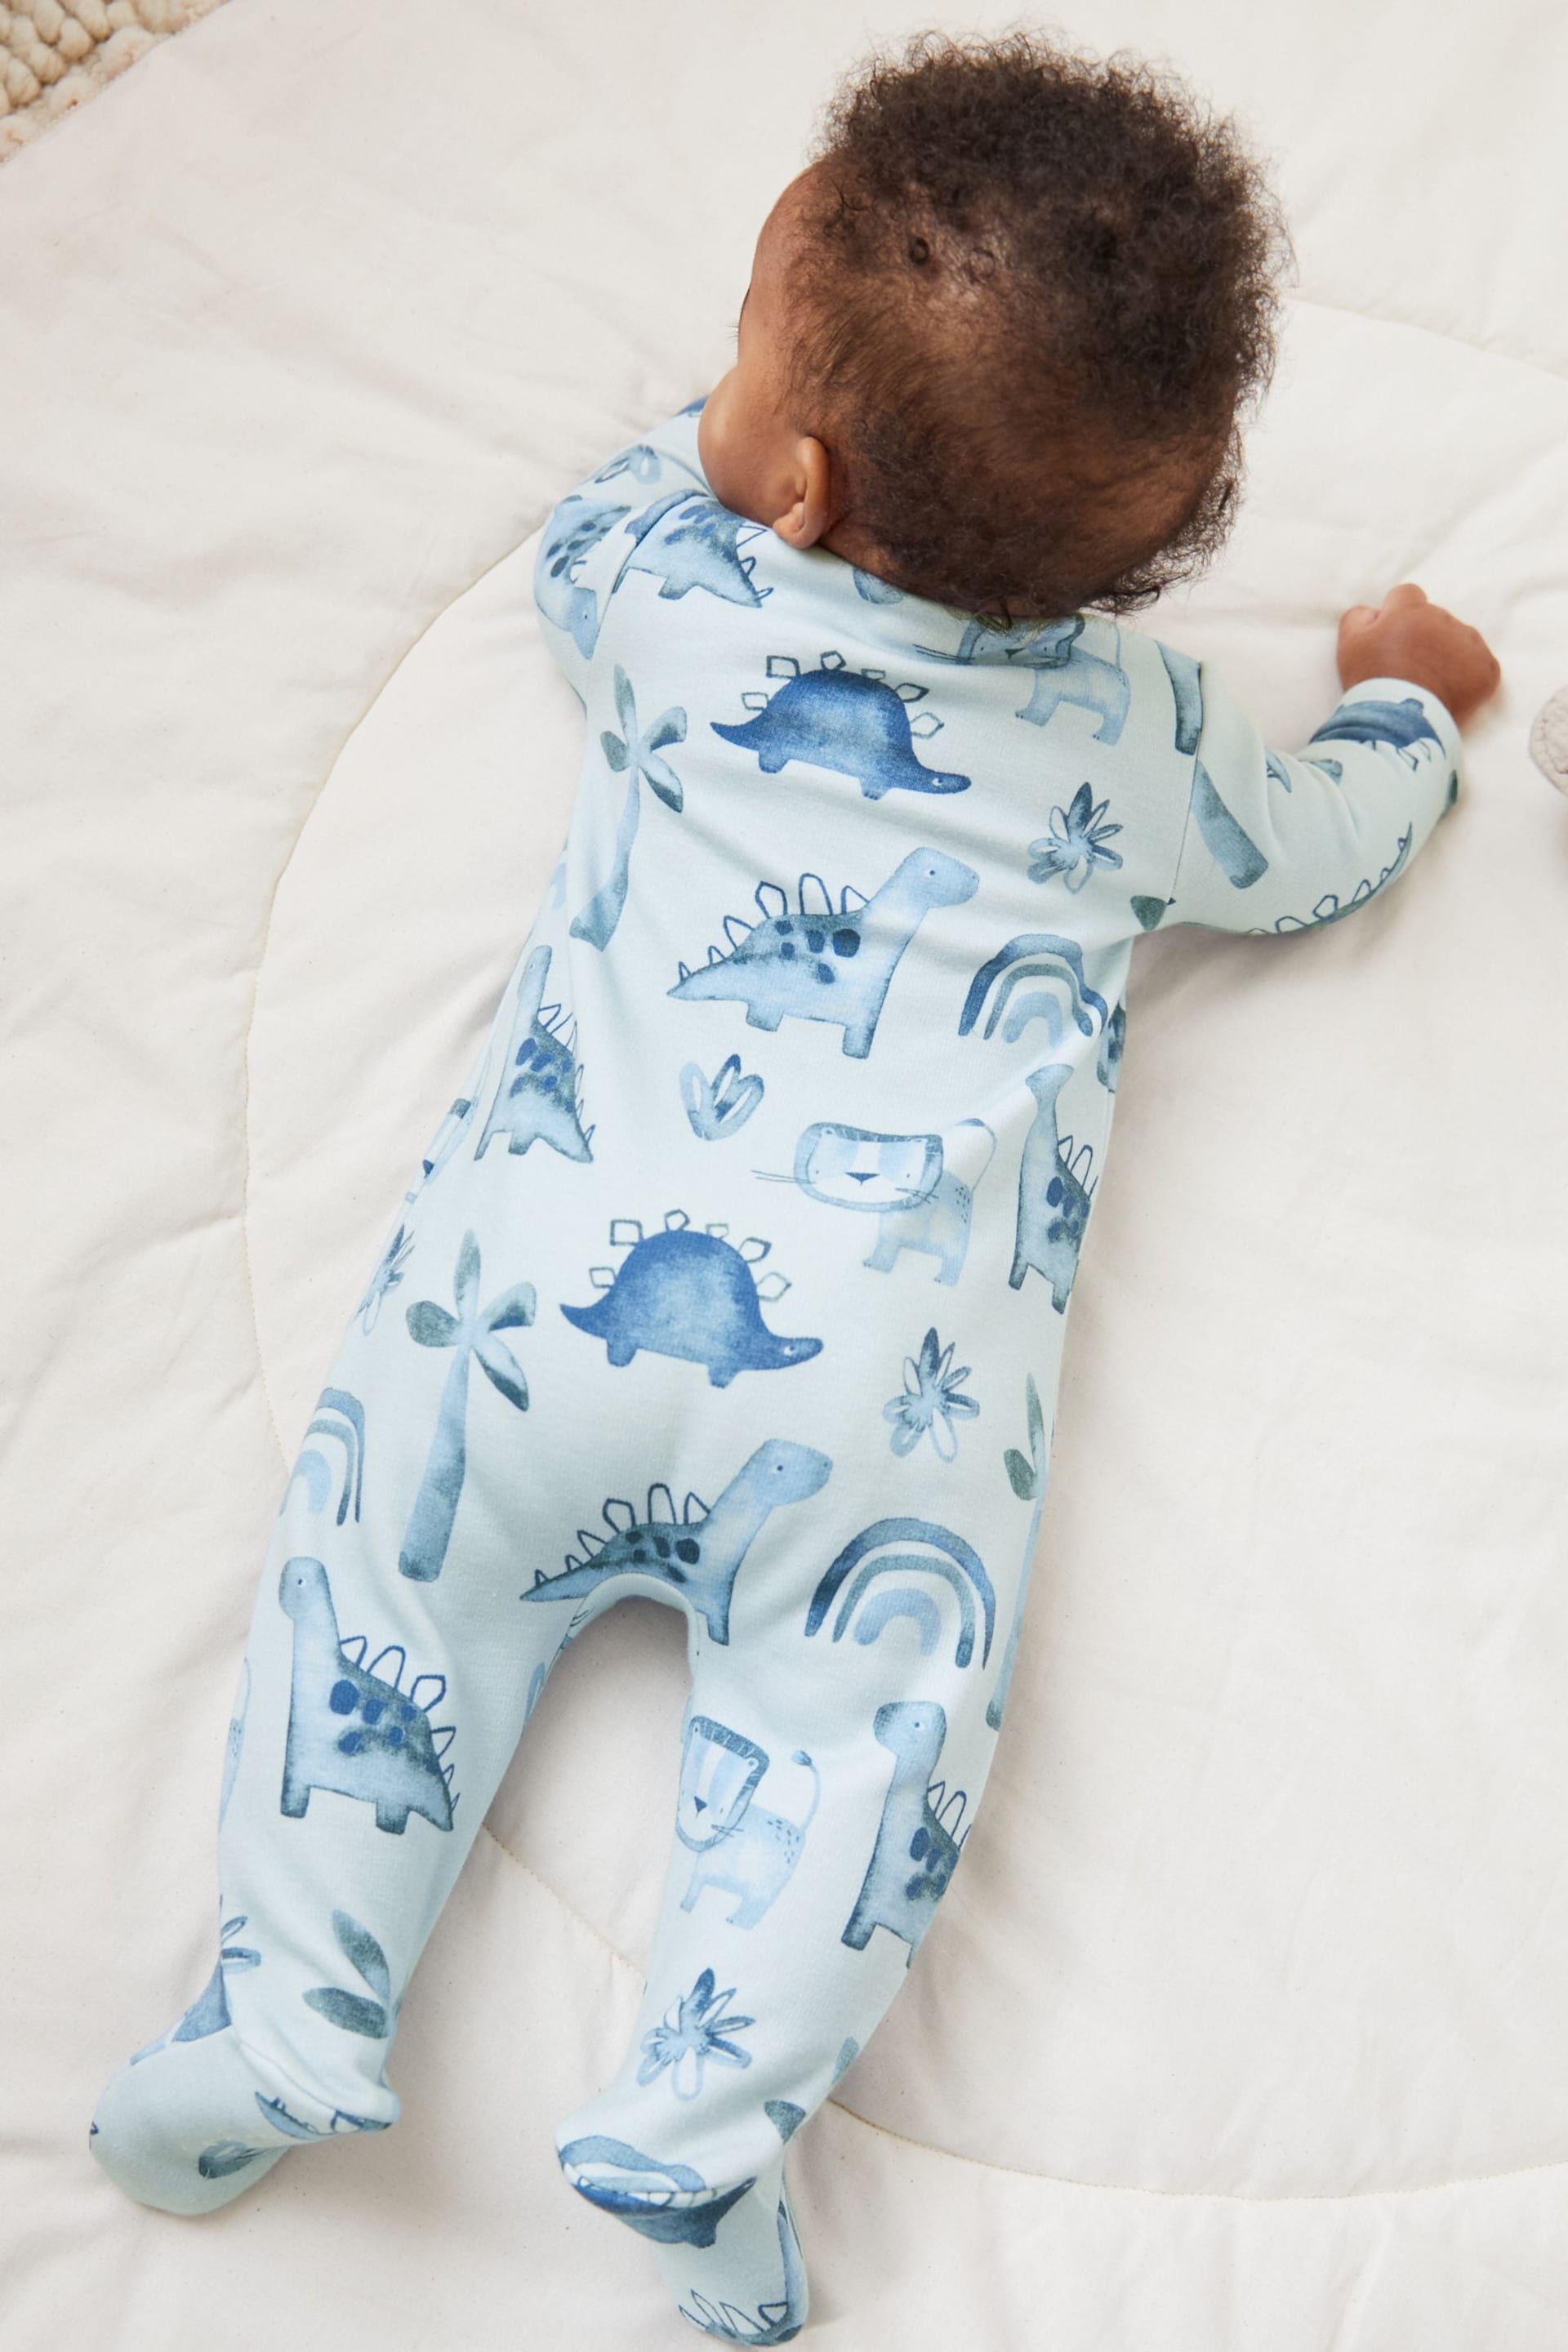 Blue Fleece Lined Baby Sleepsuit - Image 2 of 5